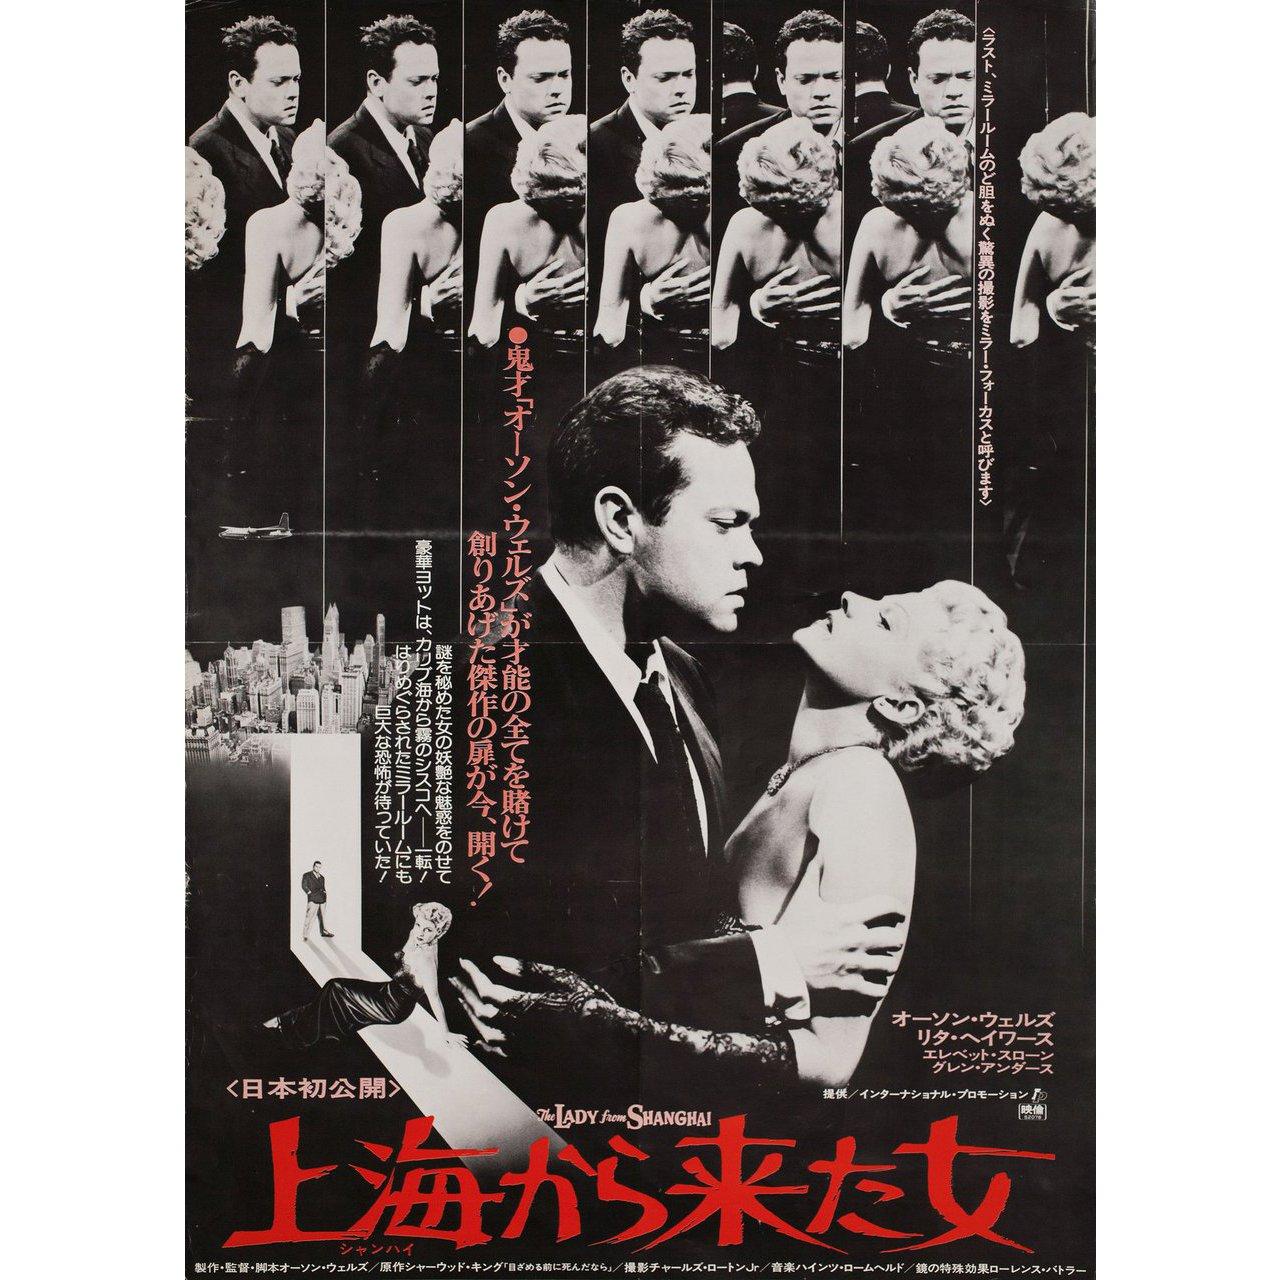 Affiche B2 japonaise originale de 1977 pour la première sortie en salle au Japon du film La Dame de Shanghai de 1947 réalisé par Orson Welles avec Rita Hayworth / Orson Welles / Everett Sloane / Glenn Anders. Très bon état, roulé. De nombreuses